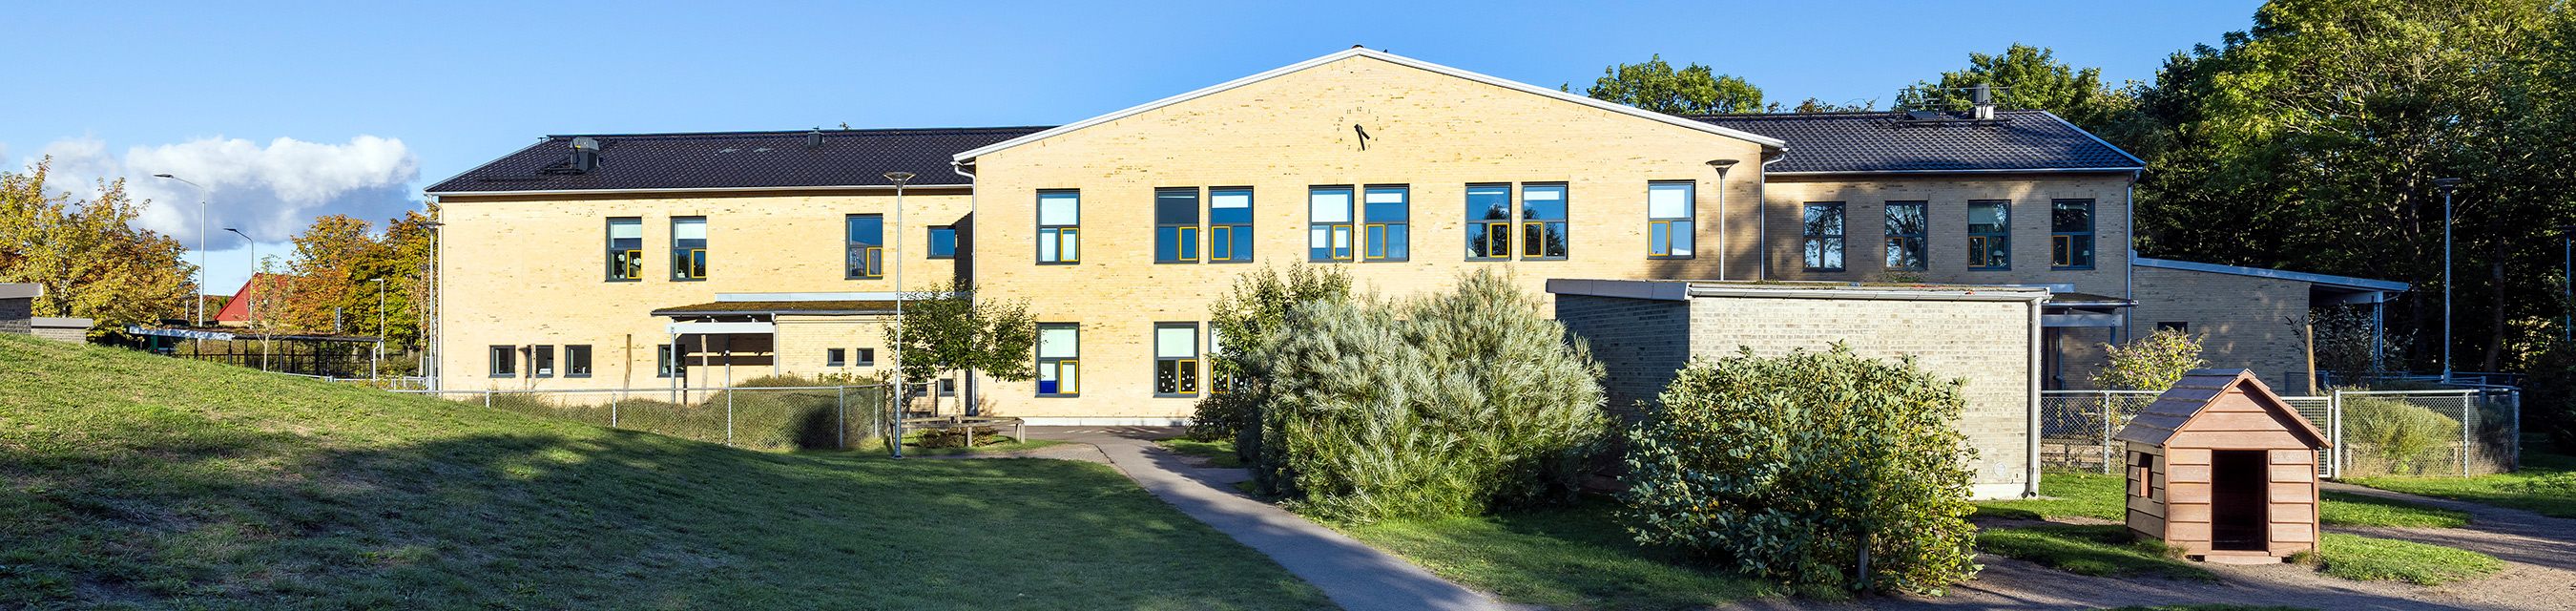 Gånglåtens förskola är byggd i två plan och har plats för 140 barn. 